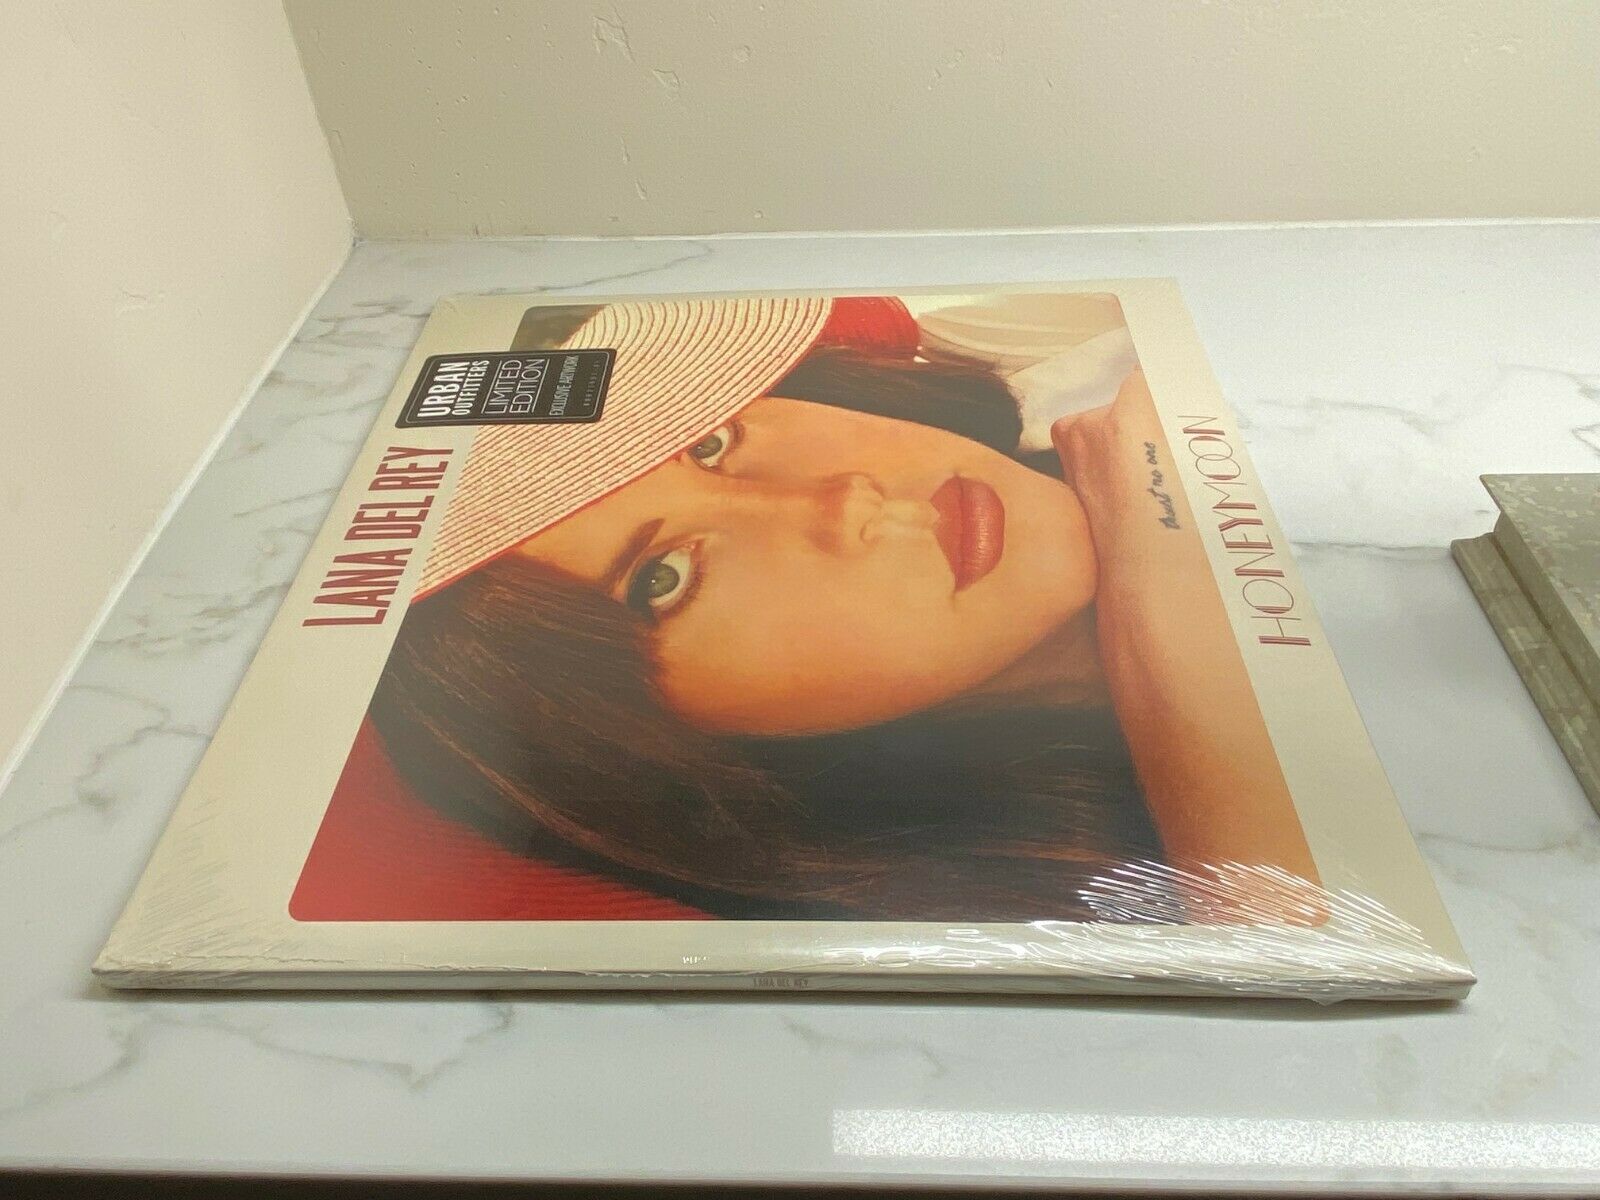 Lana Del Rey's Honeymoon vinyl. Urban Outfitters exclusive.